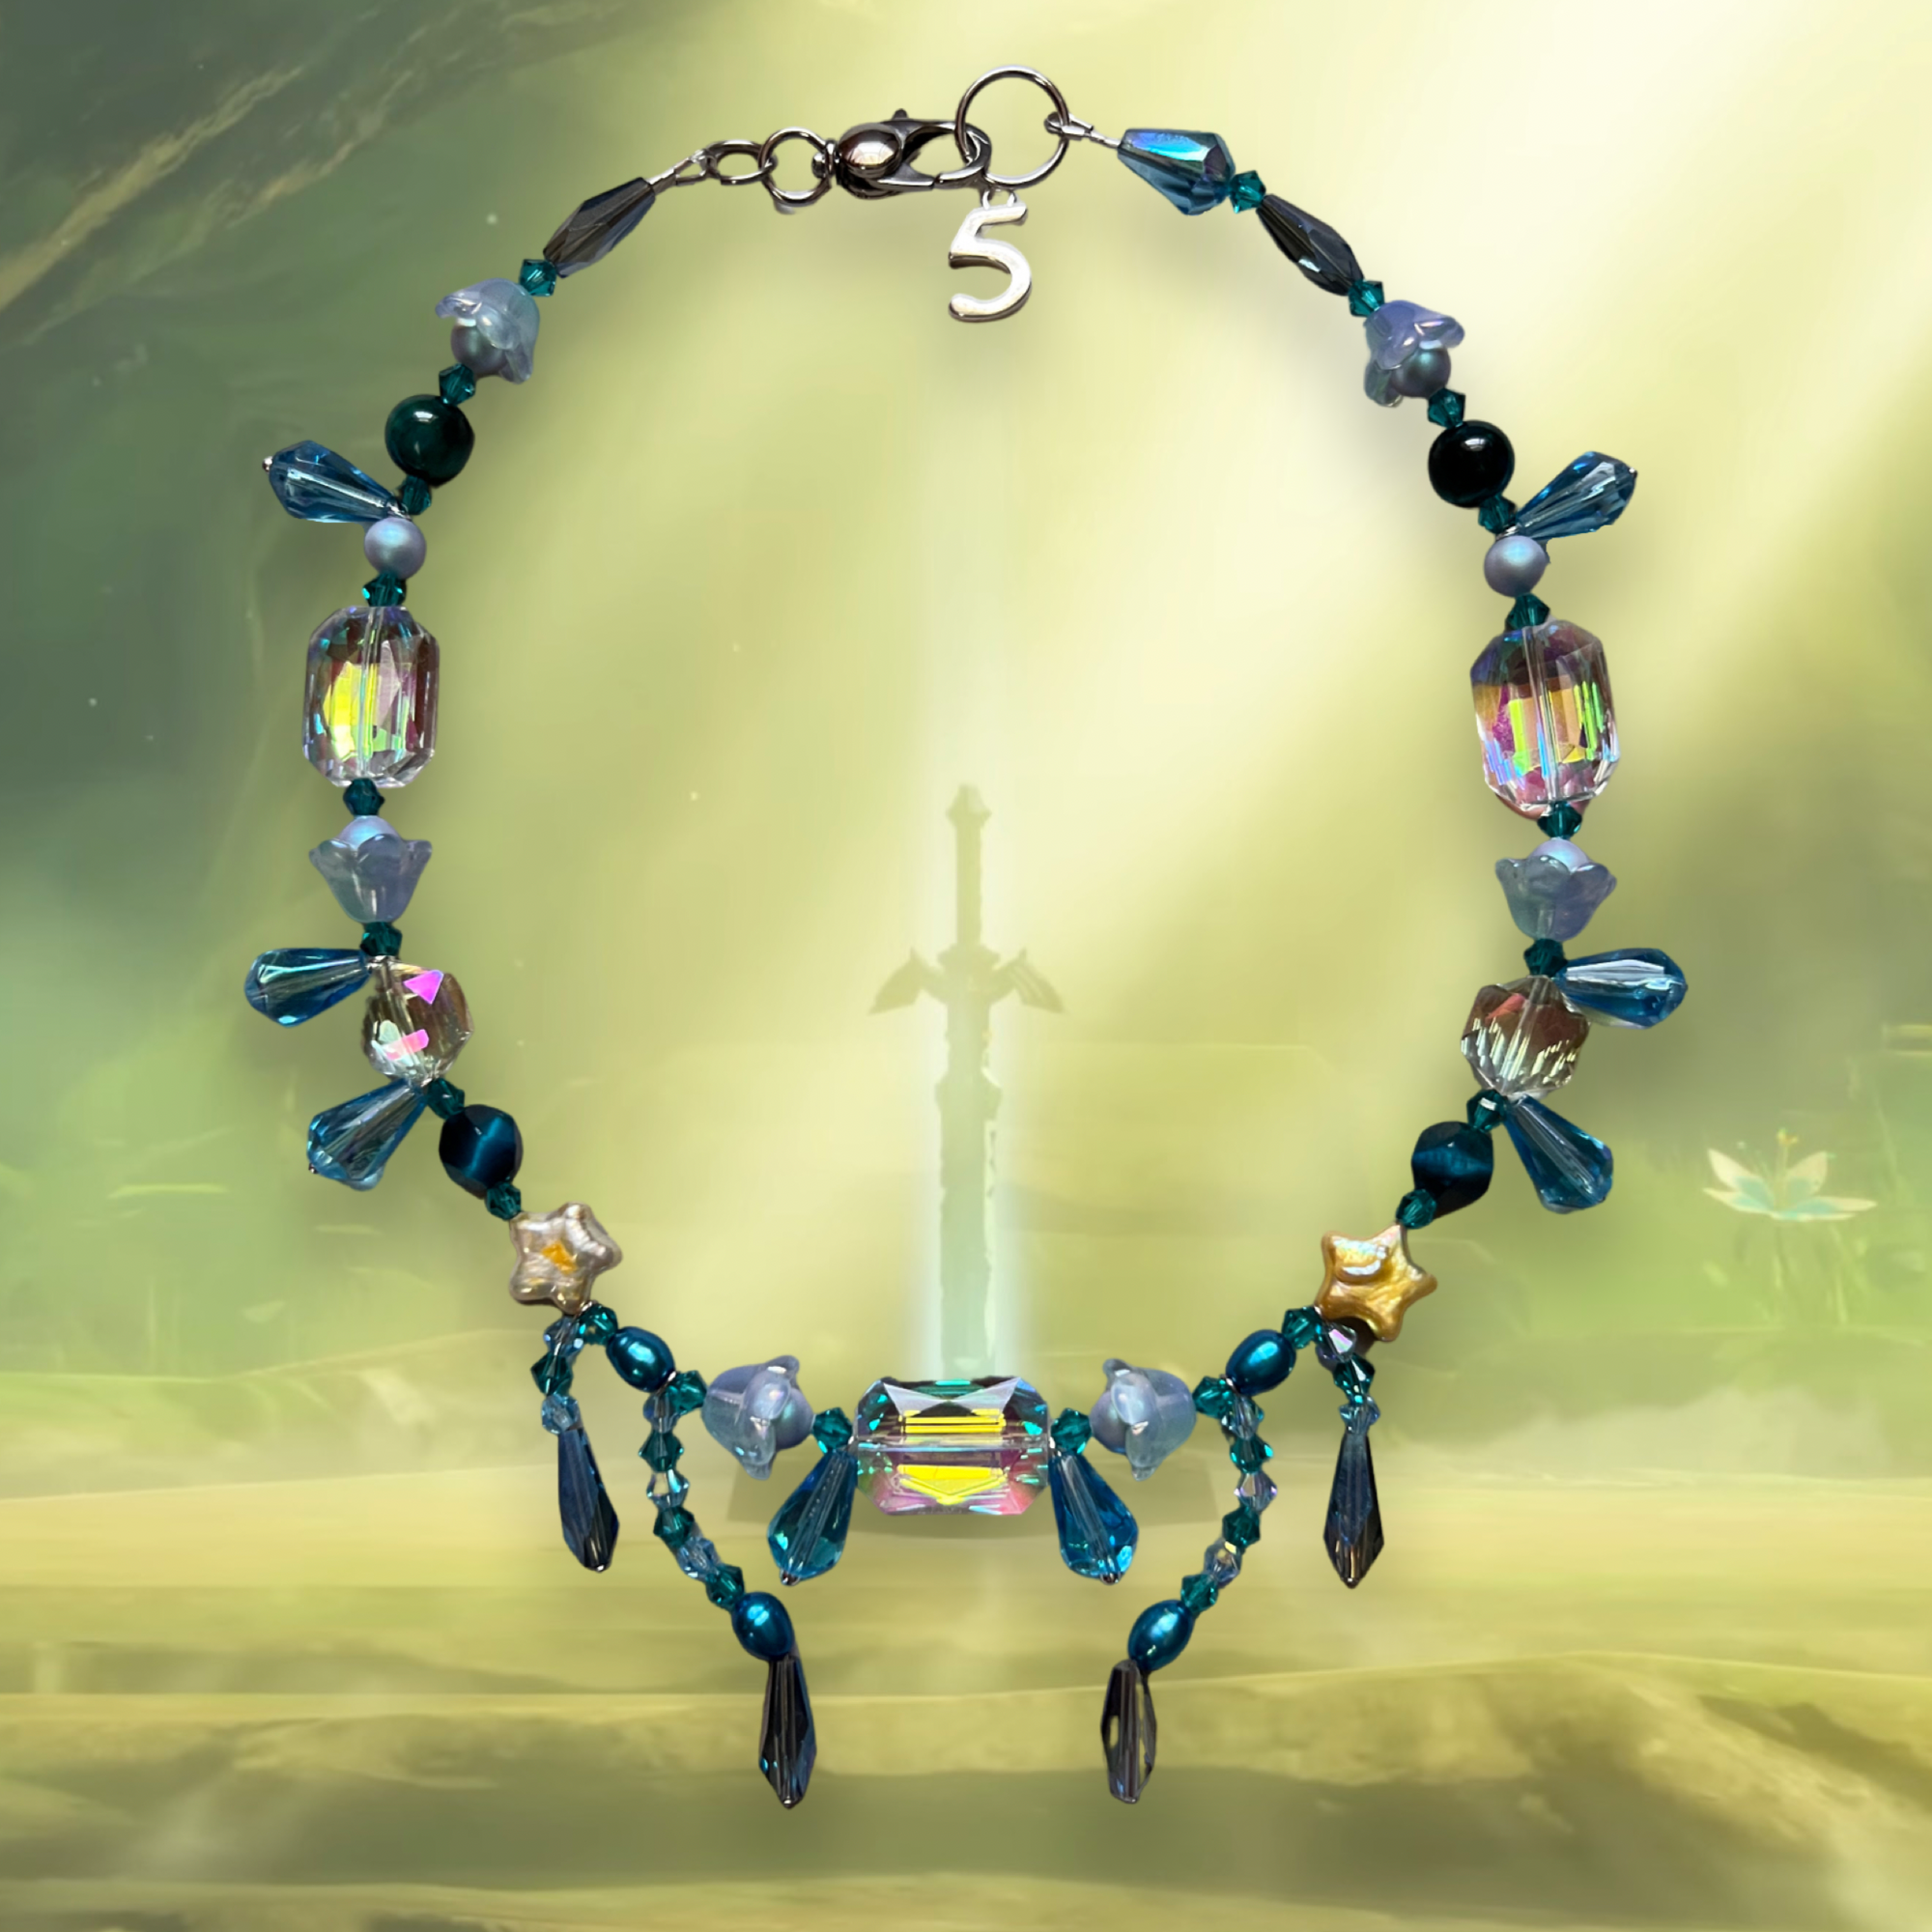 Link Necklace || Zelda: BOTW collection